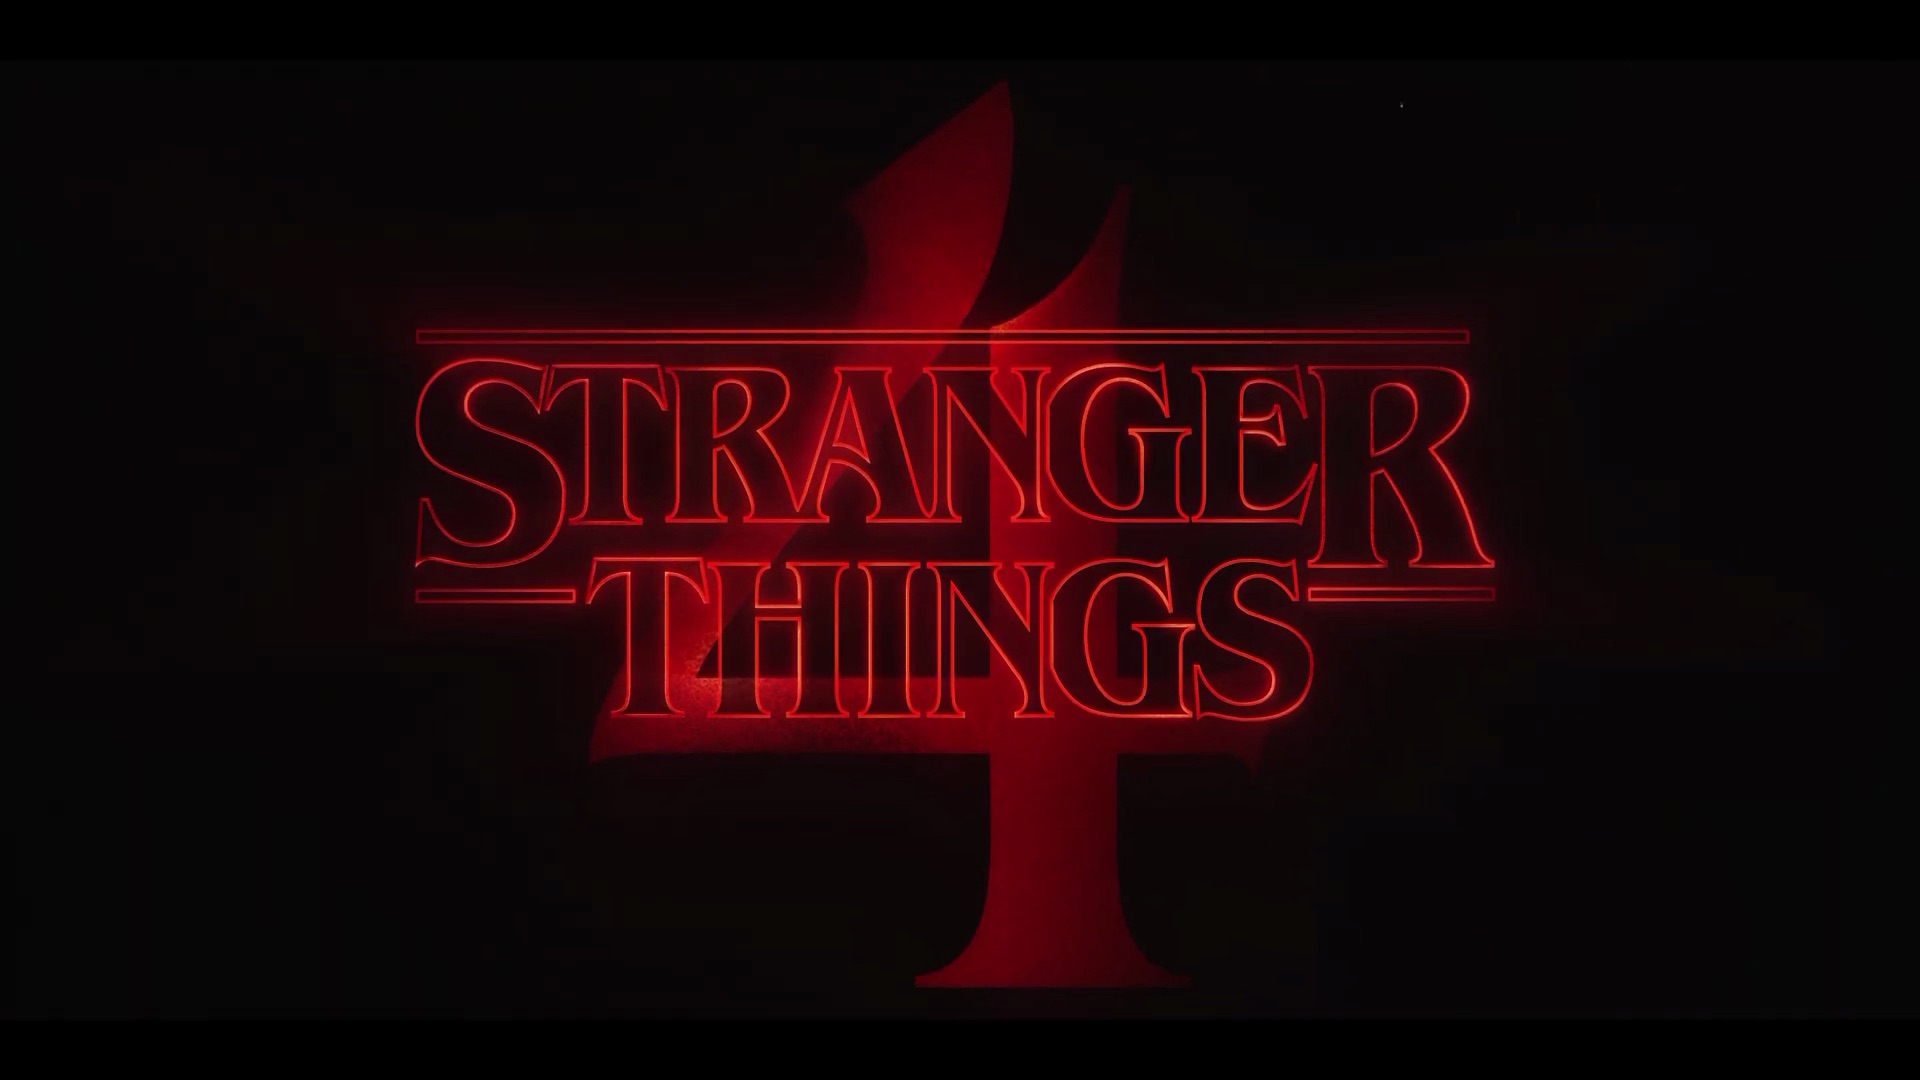 Stranger Things temporada 4 volumen 2: fecha de estreno y adelanto